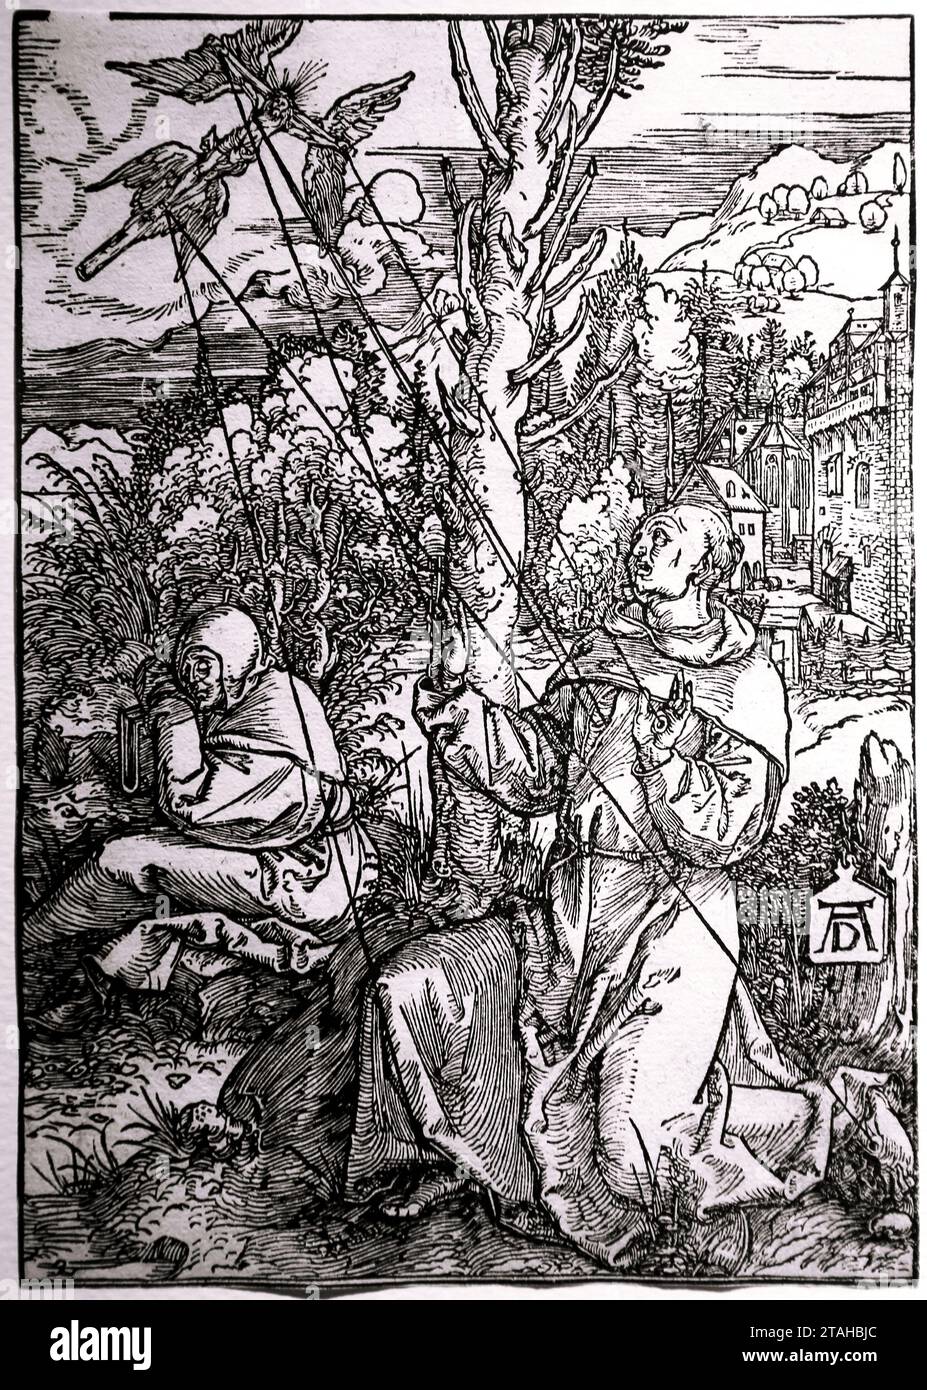 Saint François recevant les stigmates. Env. 1503. Gravure sur bois, gravure d'Abecht durer (1471-1528) . Nuremberg. Allemagne. Banque D'Images